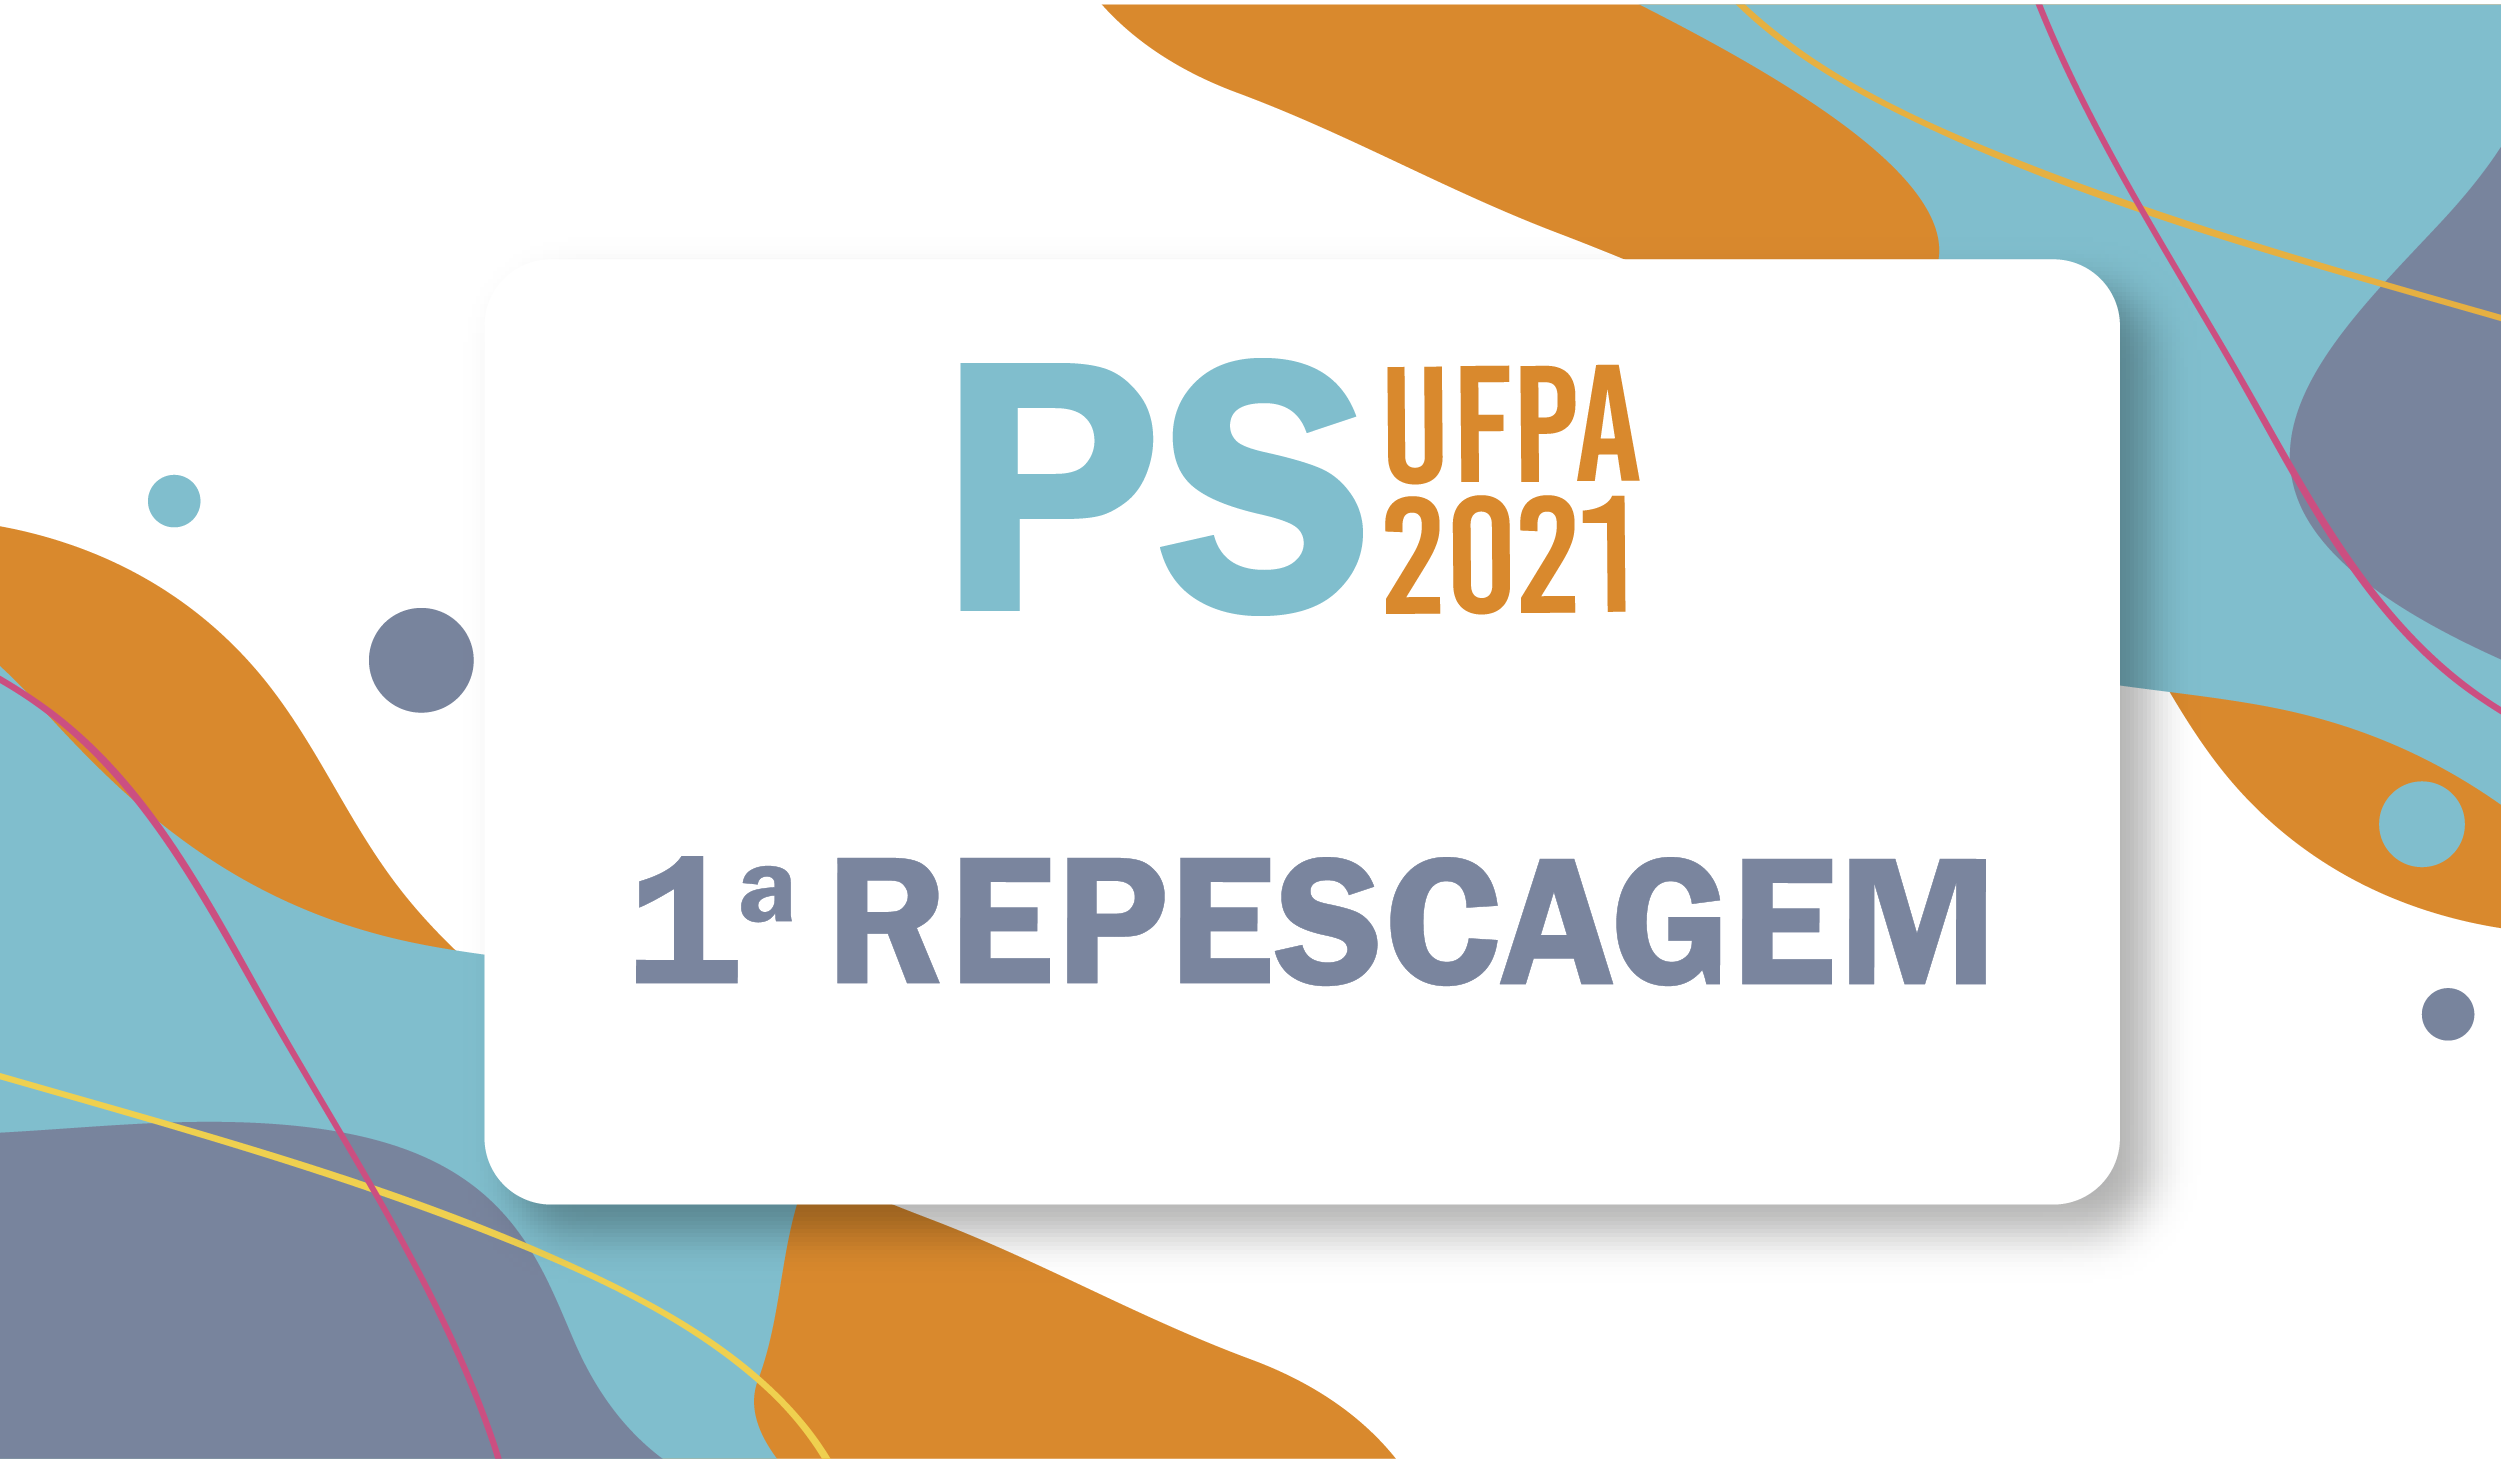 PS 2021 Repescagem Portal